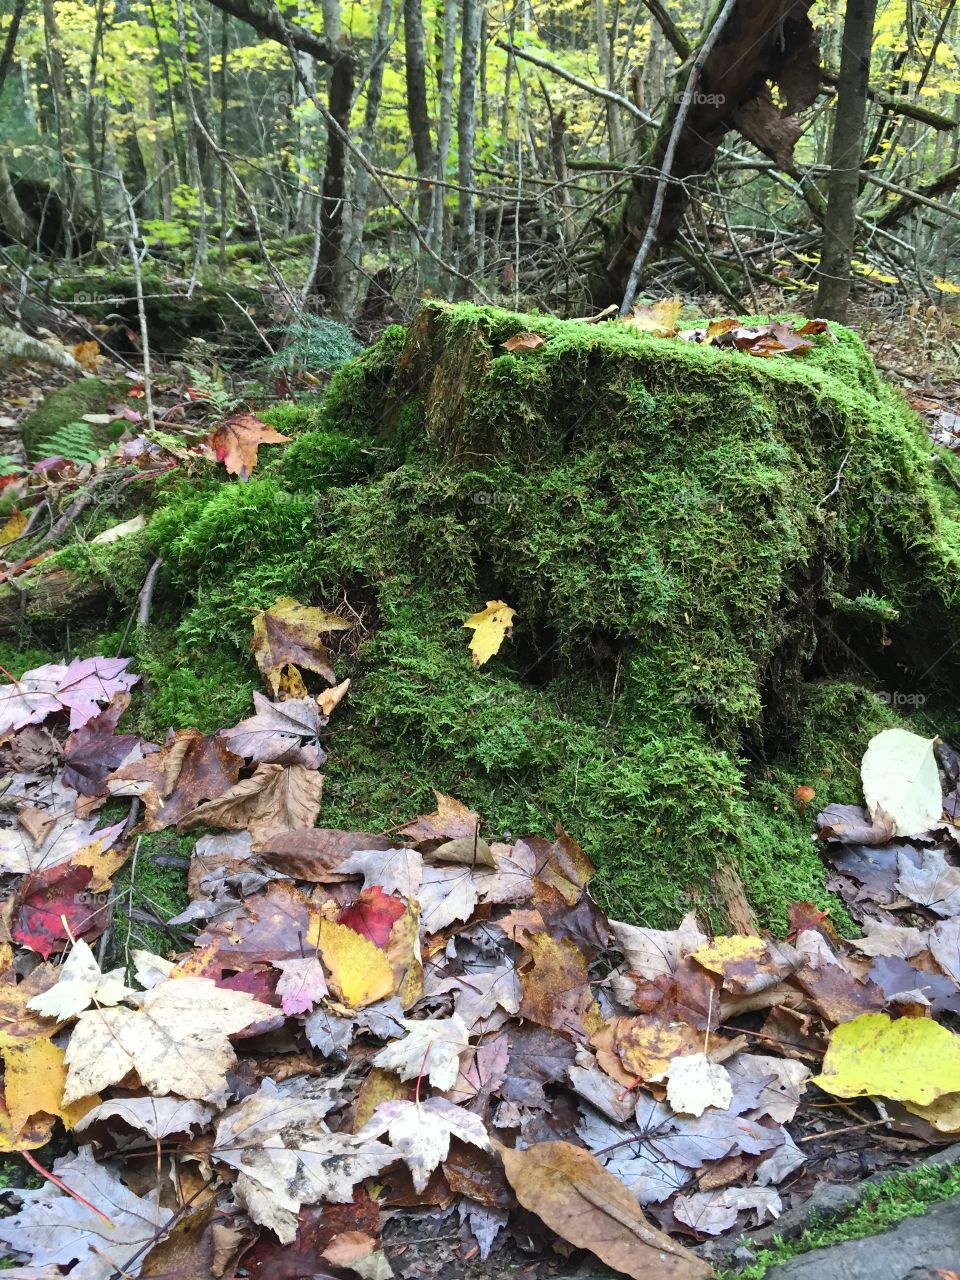 Vermont mossy stump